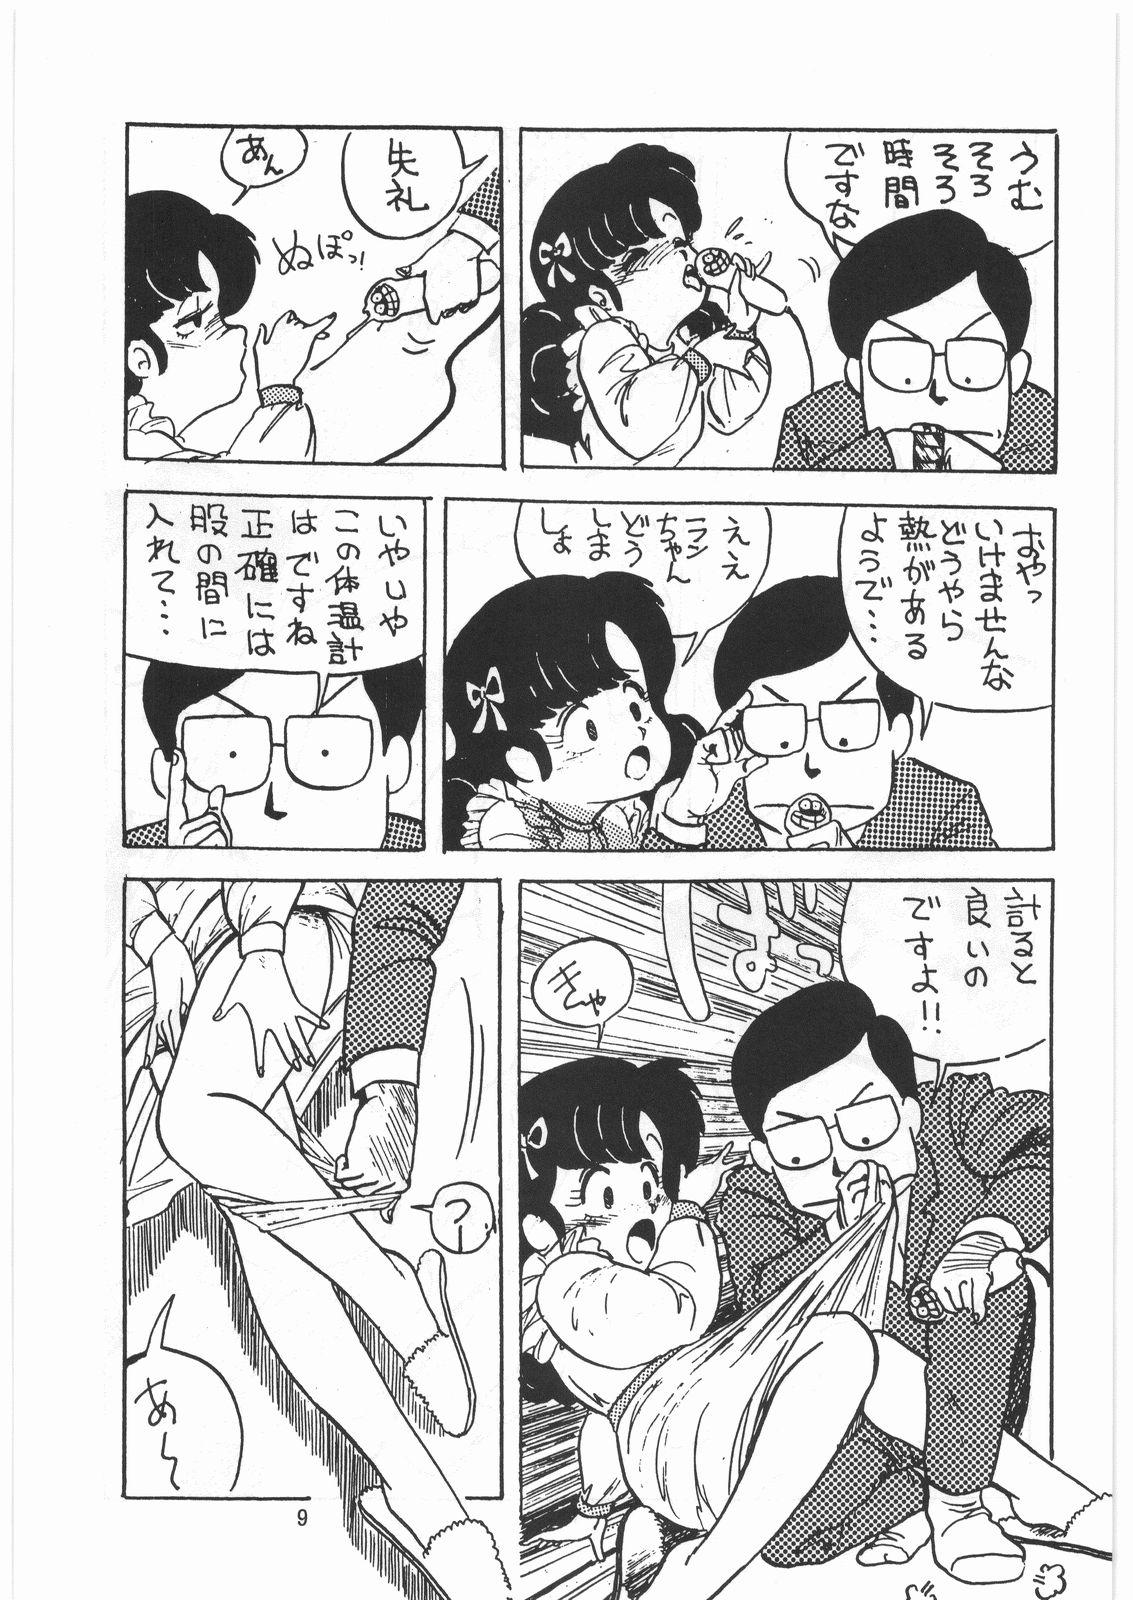 Facesitting Tororoimo Densetsu - Ten no Maki - Urusei yatsura Maison ikkoku Magical emi Creamy mami Fist of the north star Sasuga no sarutobi Hot Girl Porn - Page 8